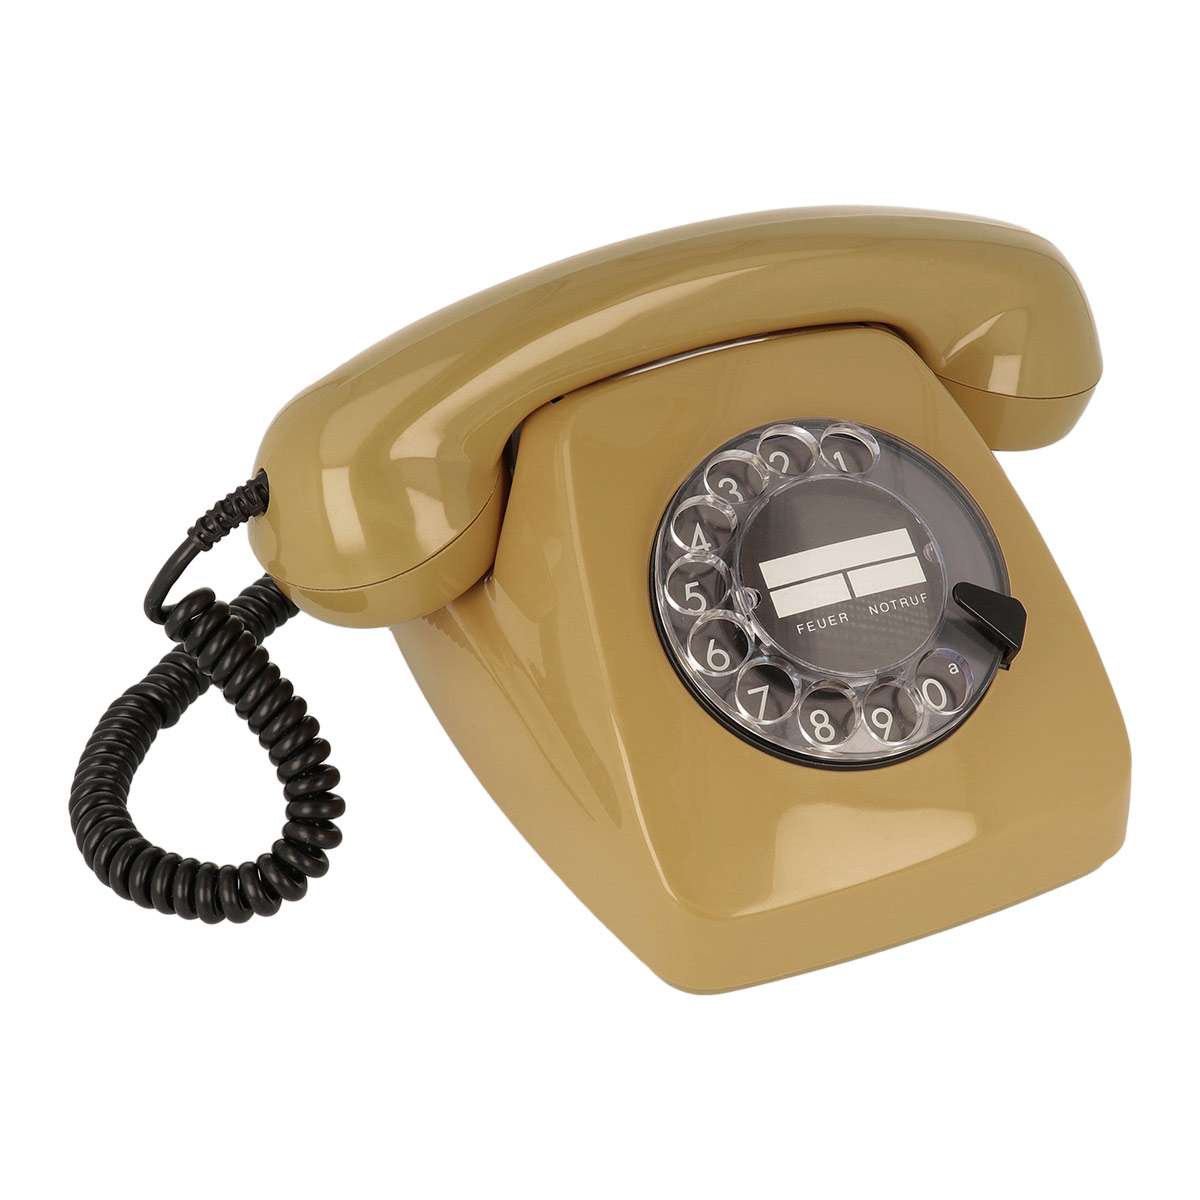 Nostalgisches Wählscheiben-Telefon W611 Piezo strahlungsreduziert